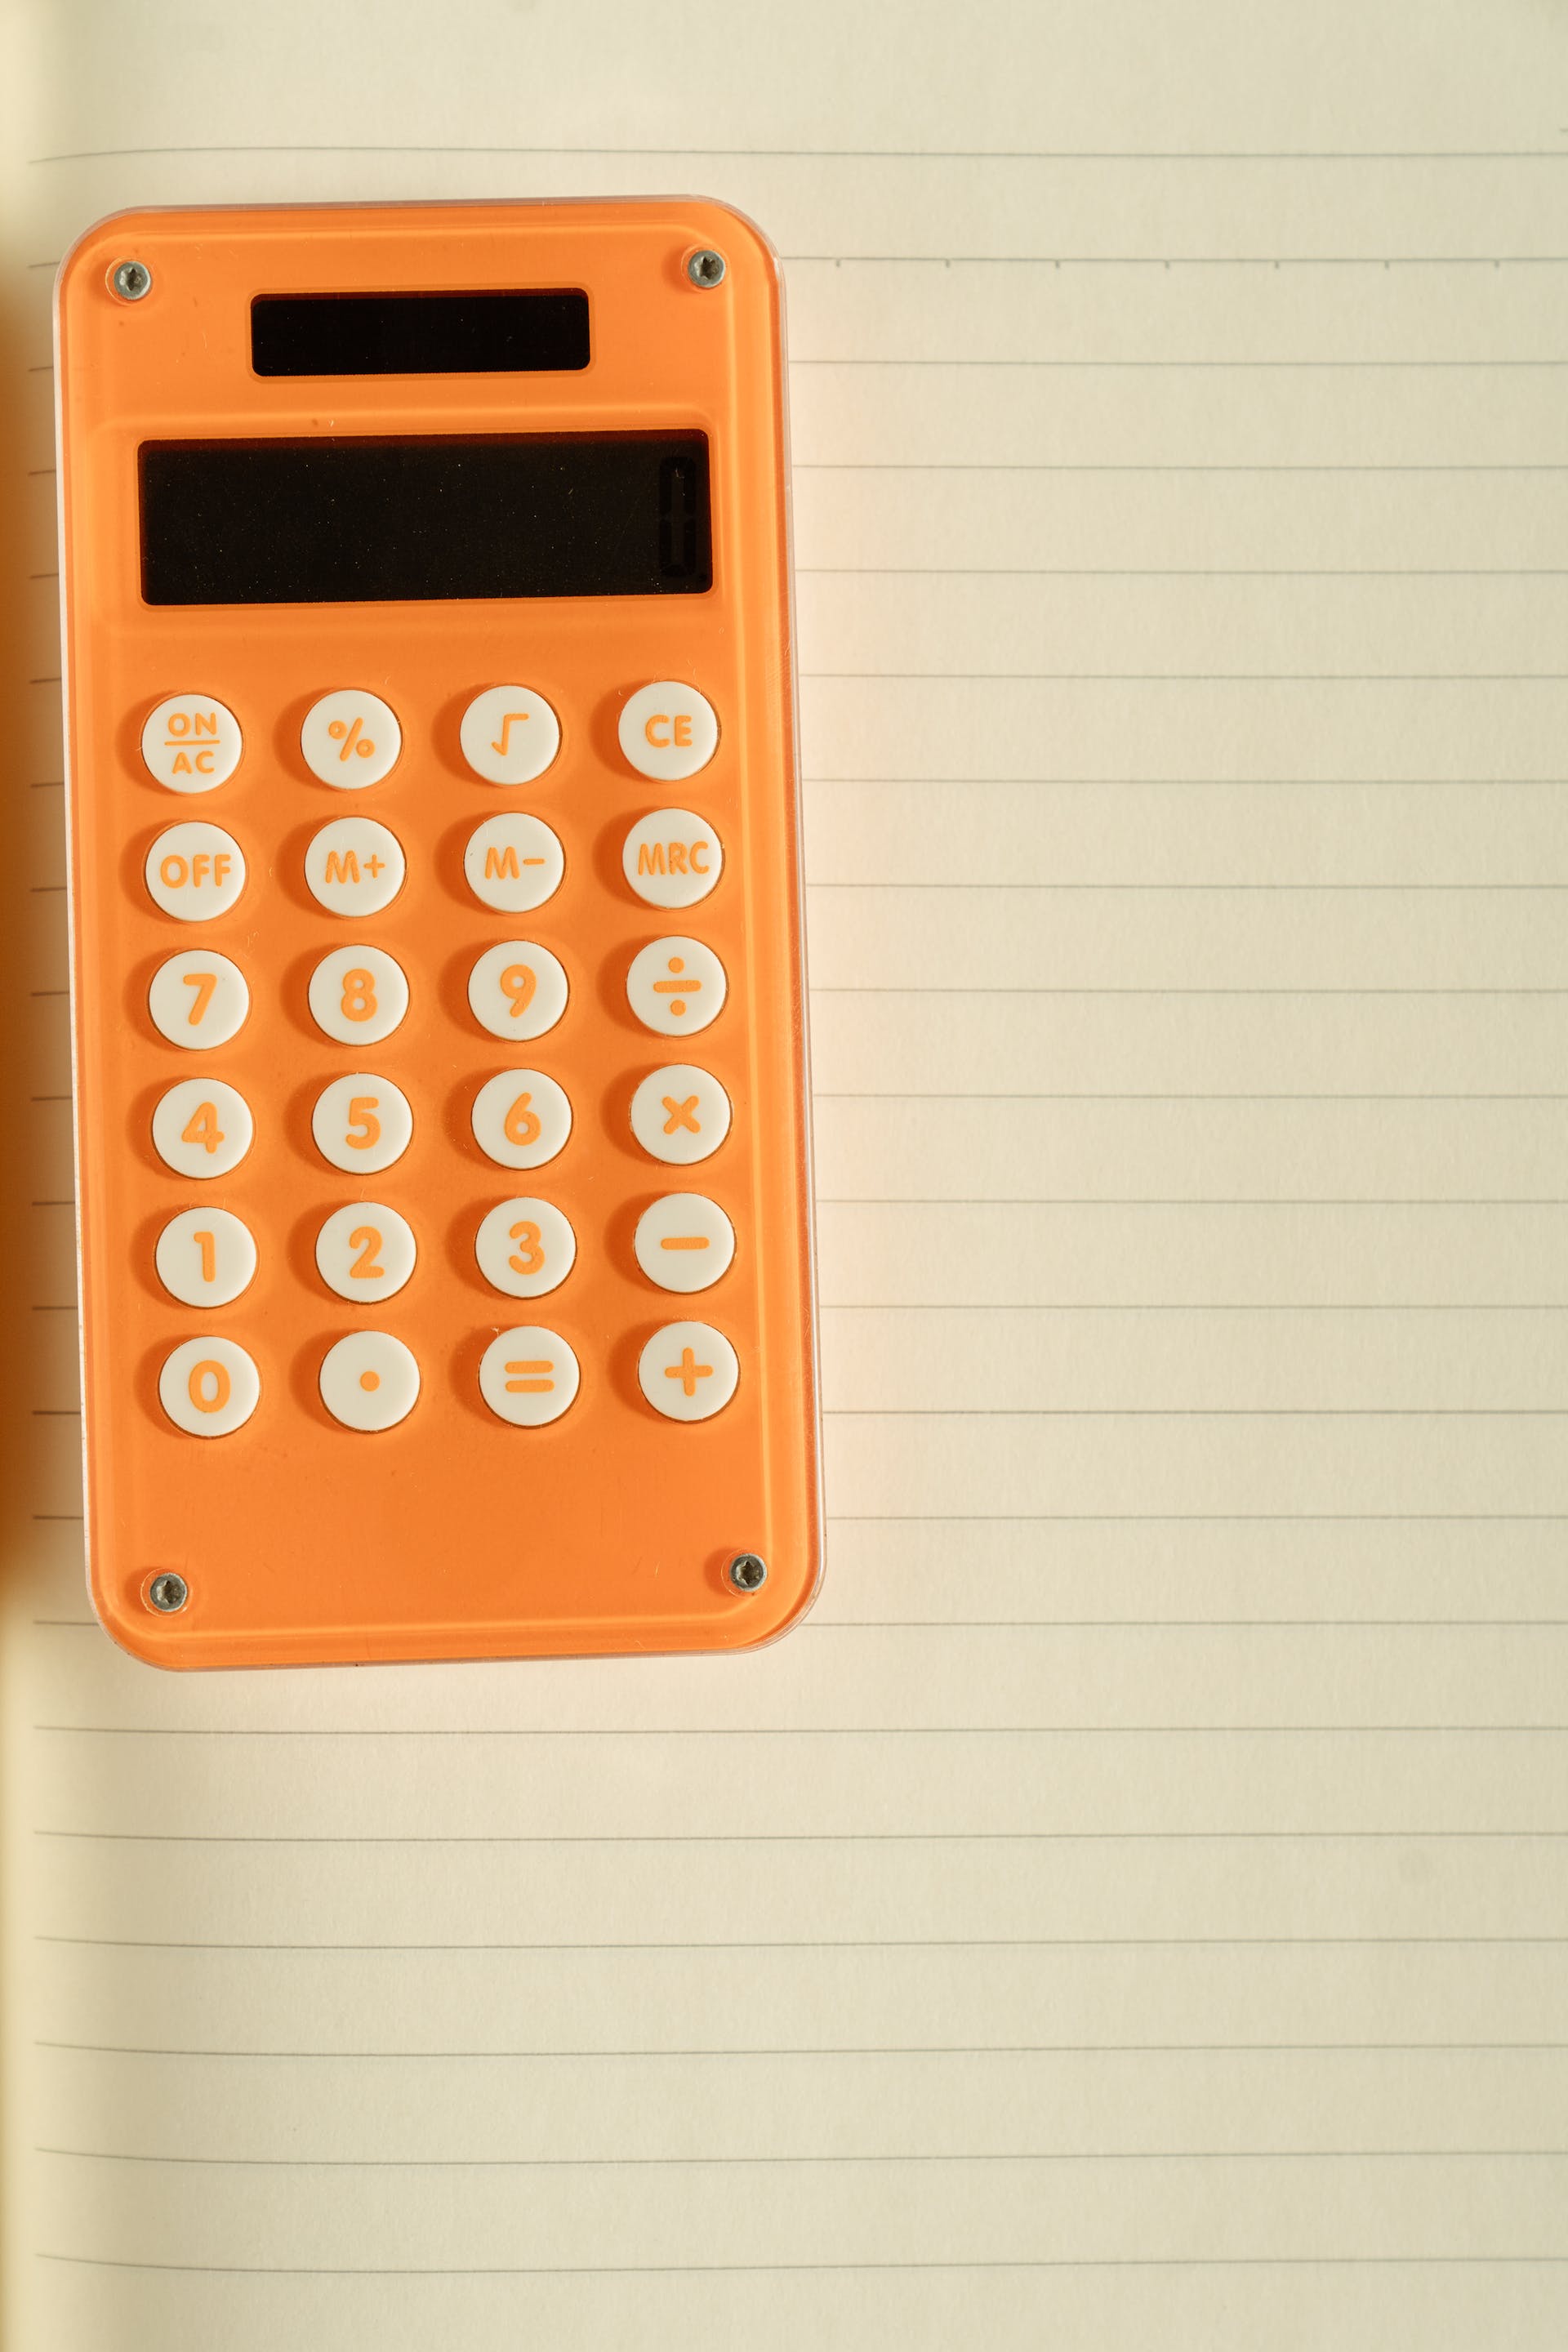 Une calculatrice orange sur du papier blanc | Source : Pexels